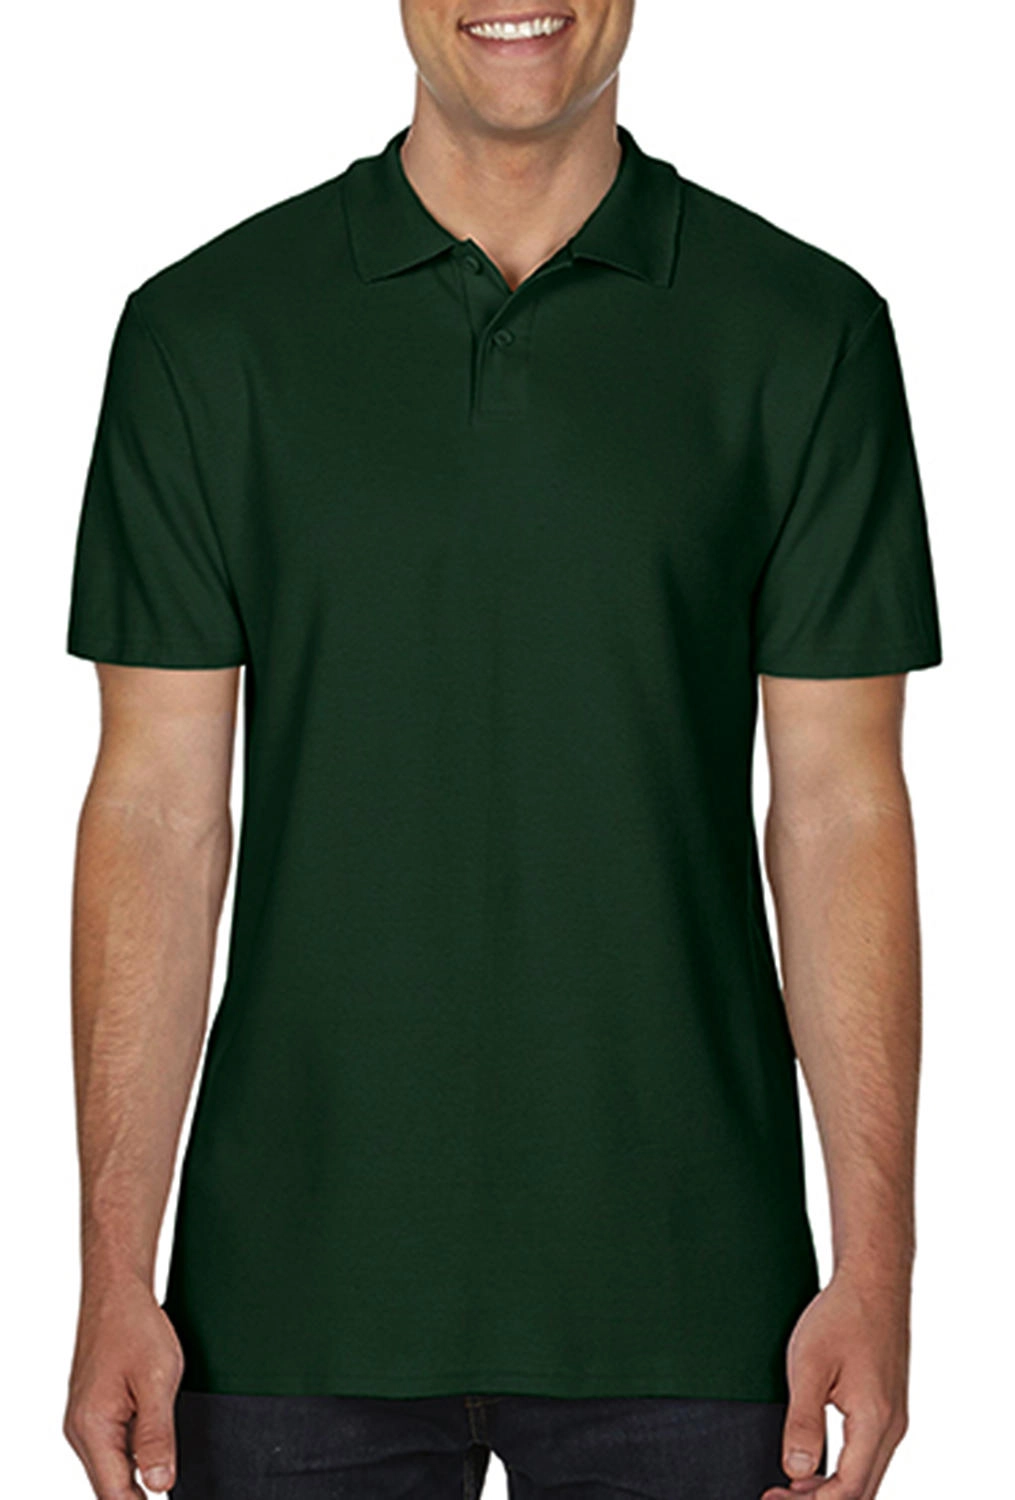 Softstyle® Adult Double Pique Polo zum Besticken und Bedrucken in der Farbe Forest Green mit Ihren Logo, Schriftzug oder Motiv.